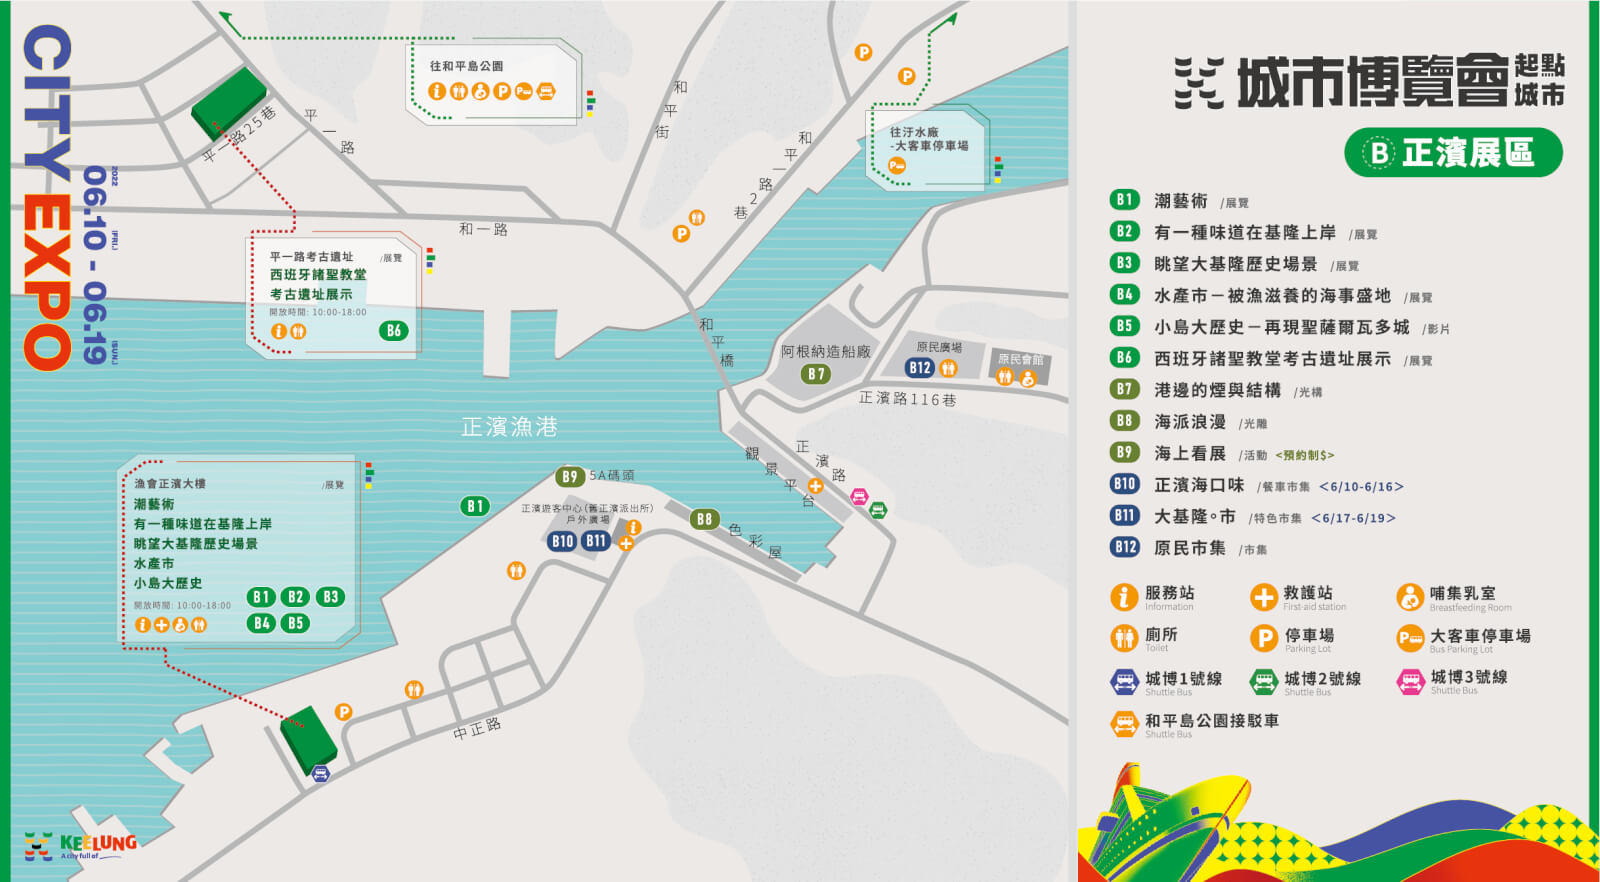 基隆2022城市博覽會起點城市「B 正濱展區」地圖